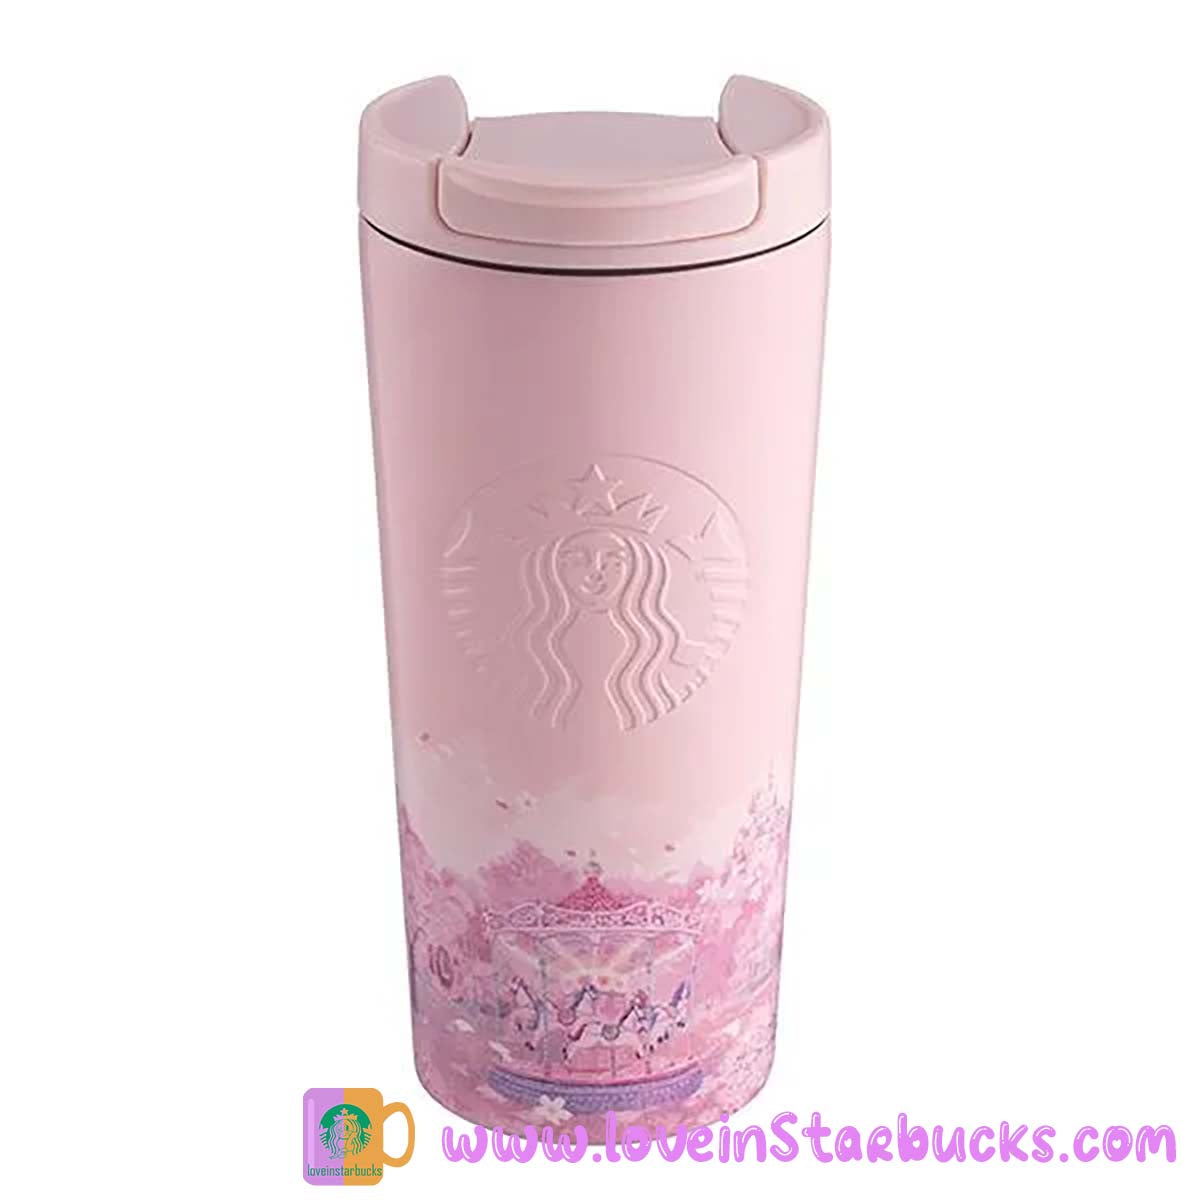 Starbucks Asia 2023 Sakura series - Cherry blossoms CAROUSEL cup 12oz